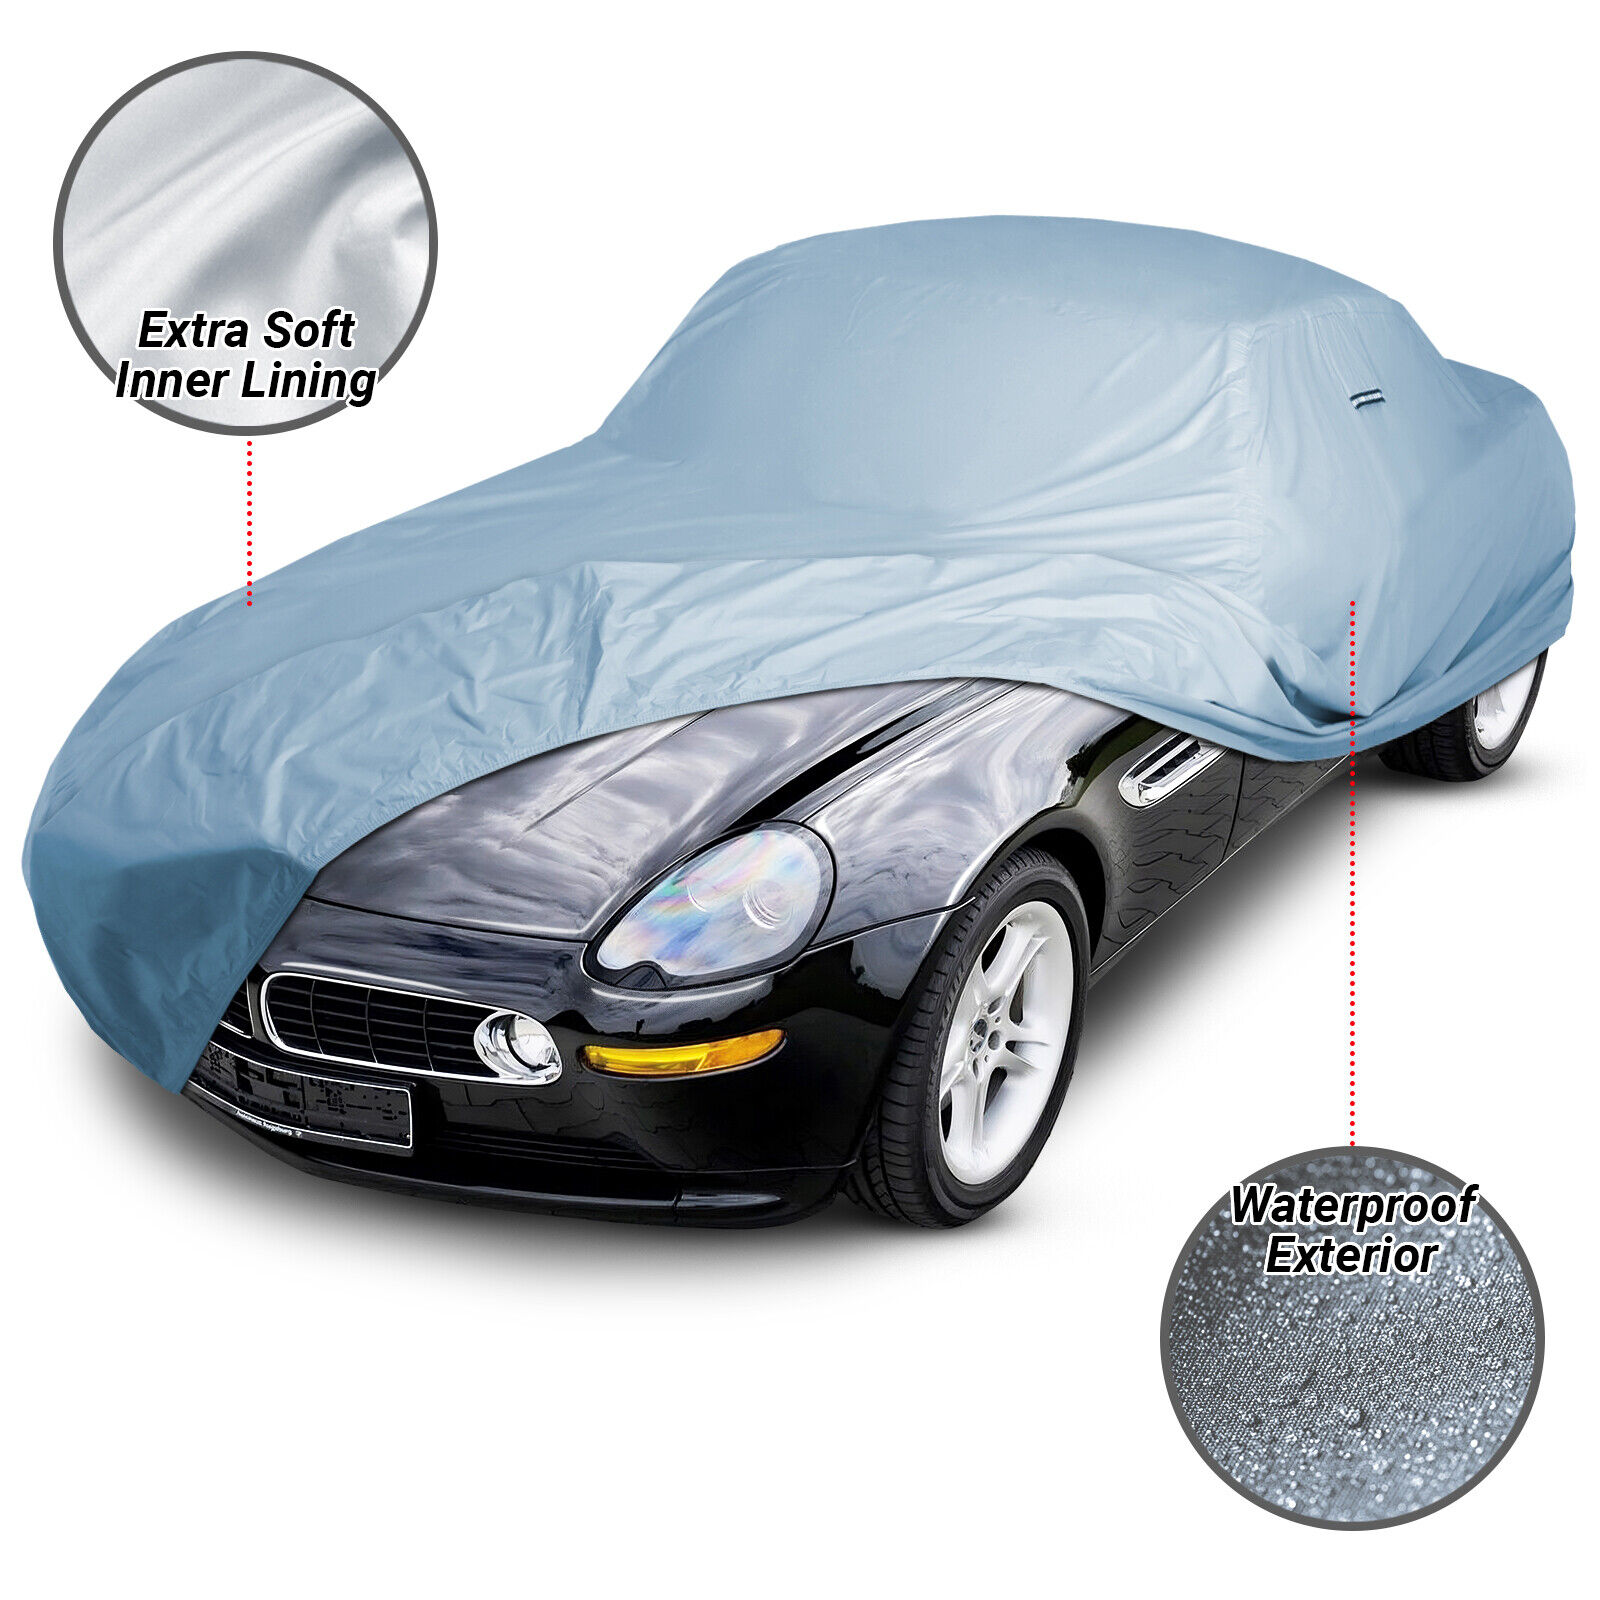 For BMW [Z8] Premium Custom-Fit Outdoor Waterproof Car Cover for Indoor Outdoor